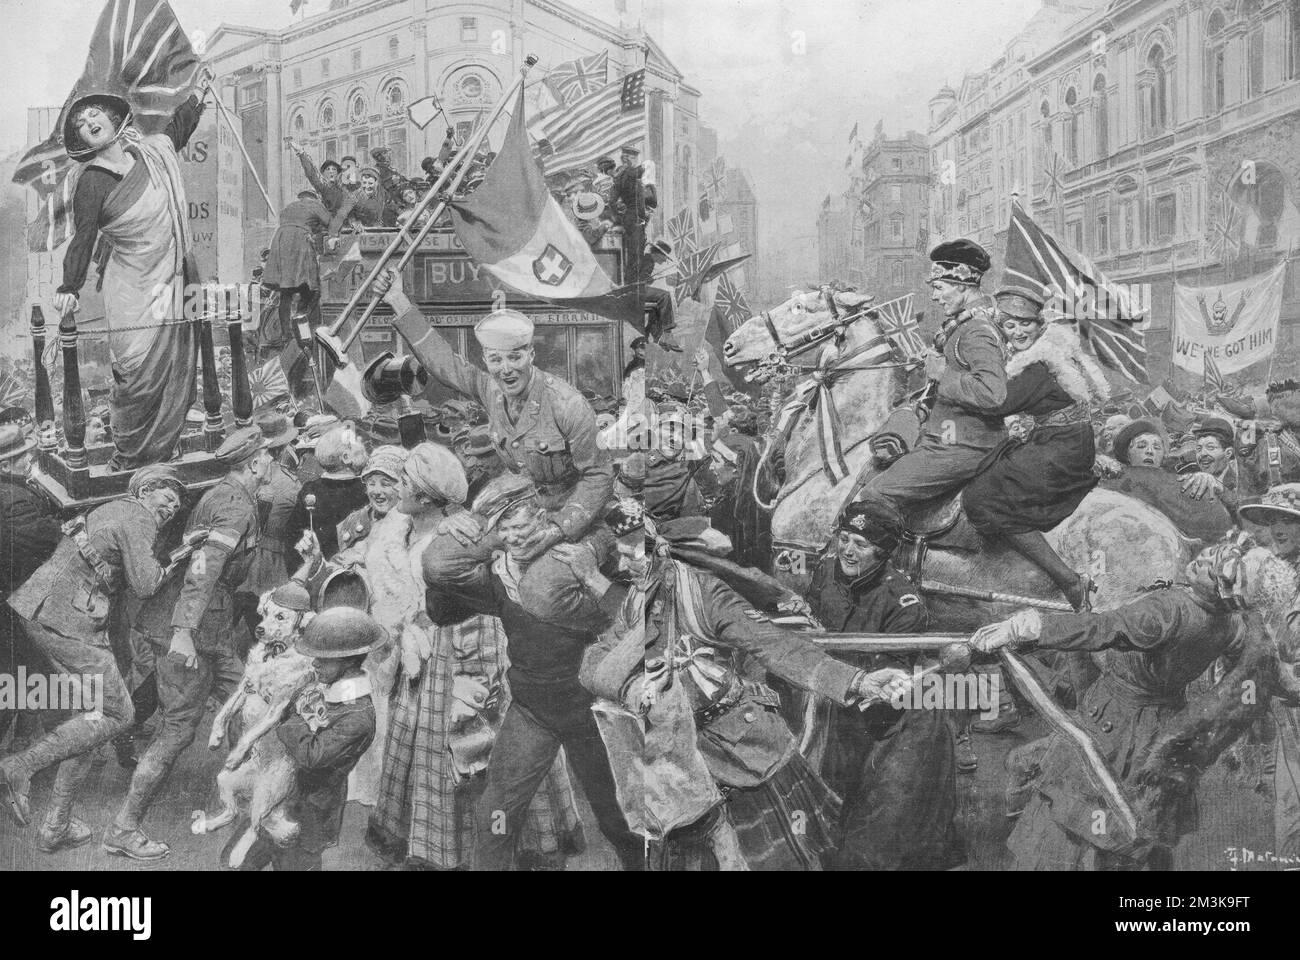 Une scène à Piccadilly Circus, dans le centre de Londres, donnant une impression de célébrations de la victoire à la fin de la première Guerre mondiale Divers soldats rejoignent des civils et même des chiens dans une mêlée de drapeau joyeux qui agite et applaudissent. Date : 23 novembre 1918 Banque D'Images